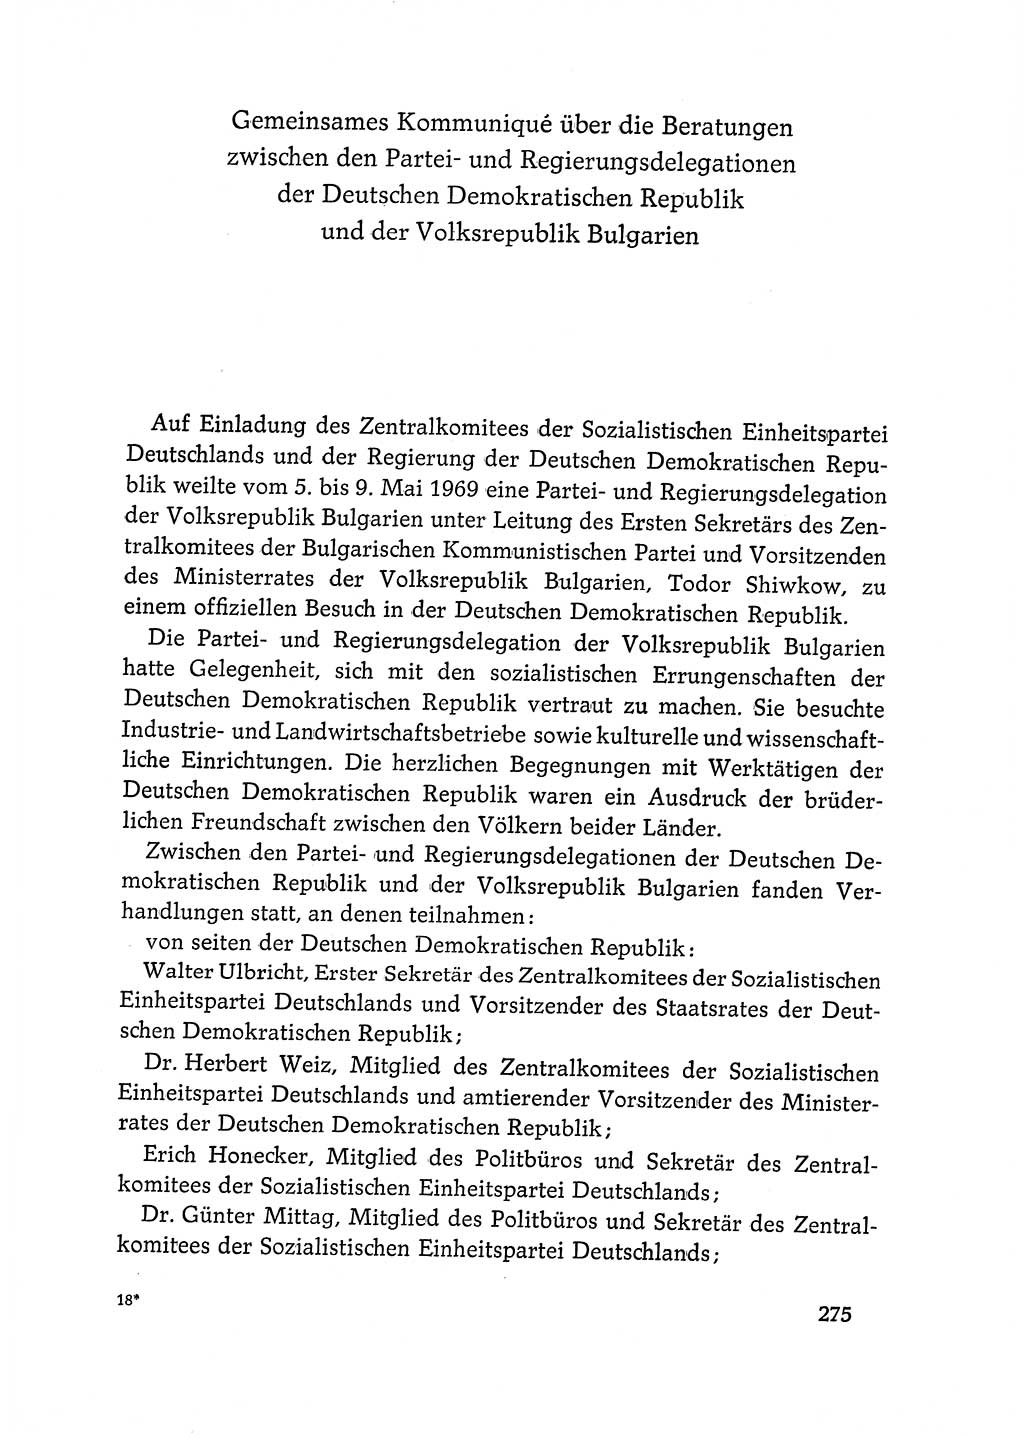 Dokumente der Sozialistischen Einheitspartei Deutschlands (SED) [Deutsche Demokratische Republik (DDR)] 1968-1969, Seite 275 (Dok. SED DDR 1968-1969, S. 275)